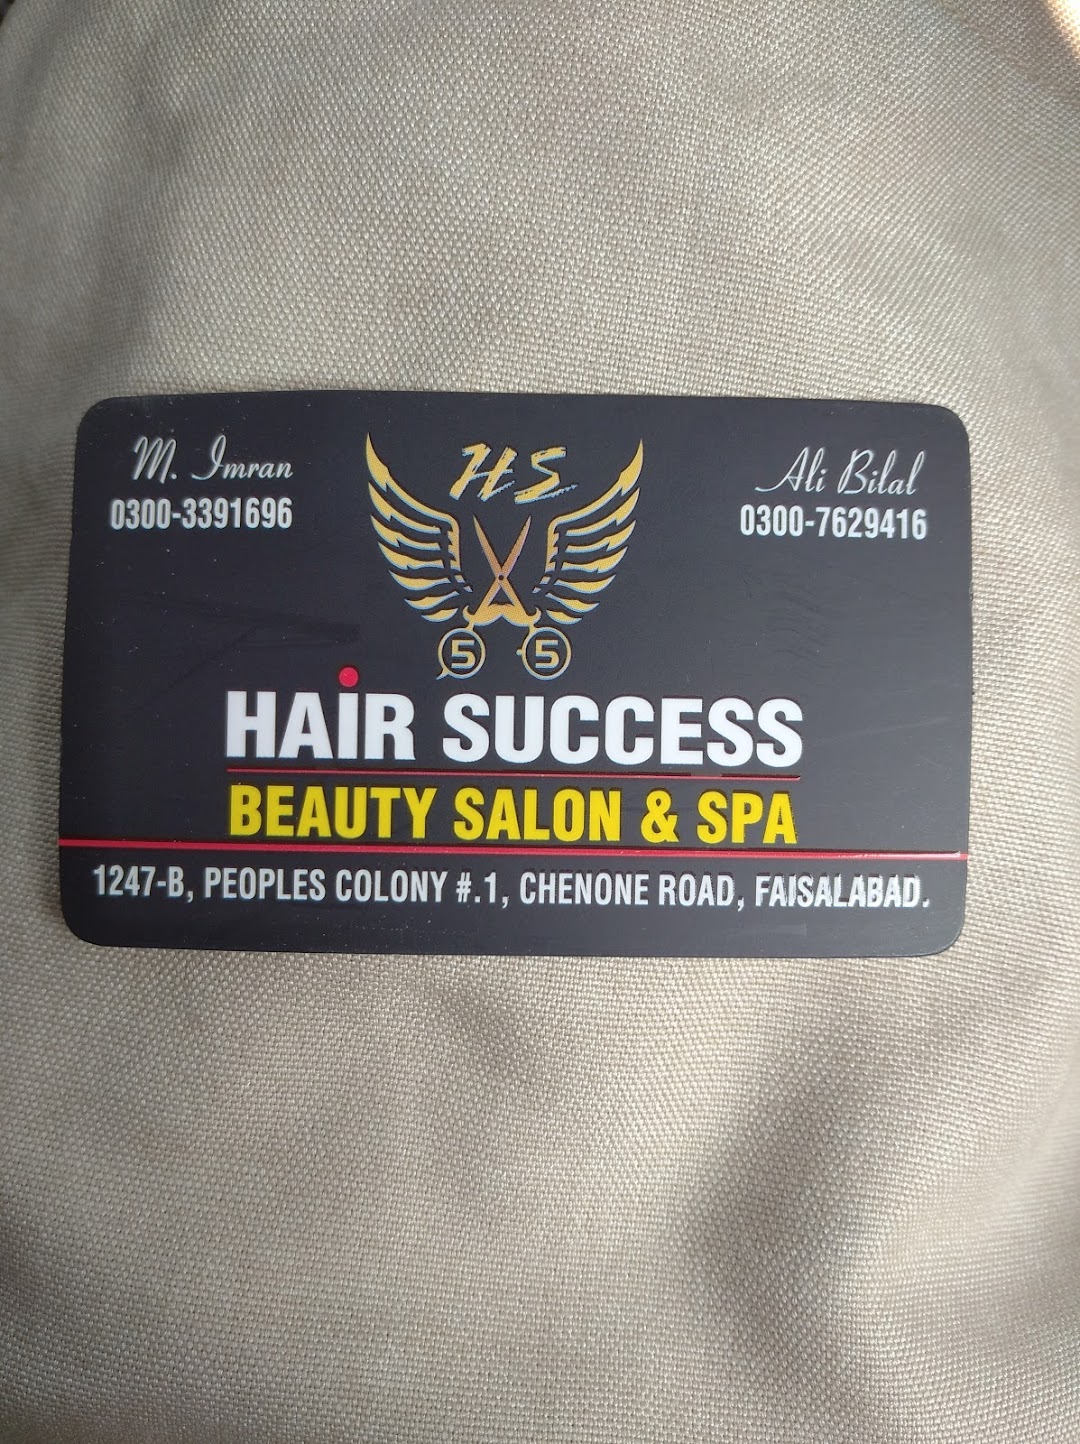 HAIR SUCCESS BEAUTY SALON & SPA